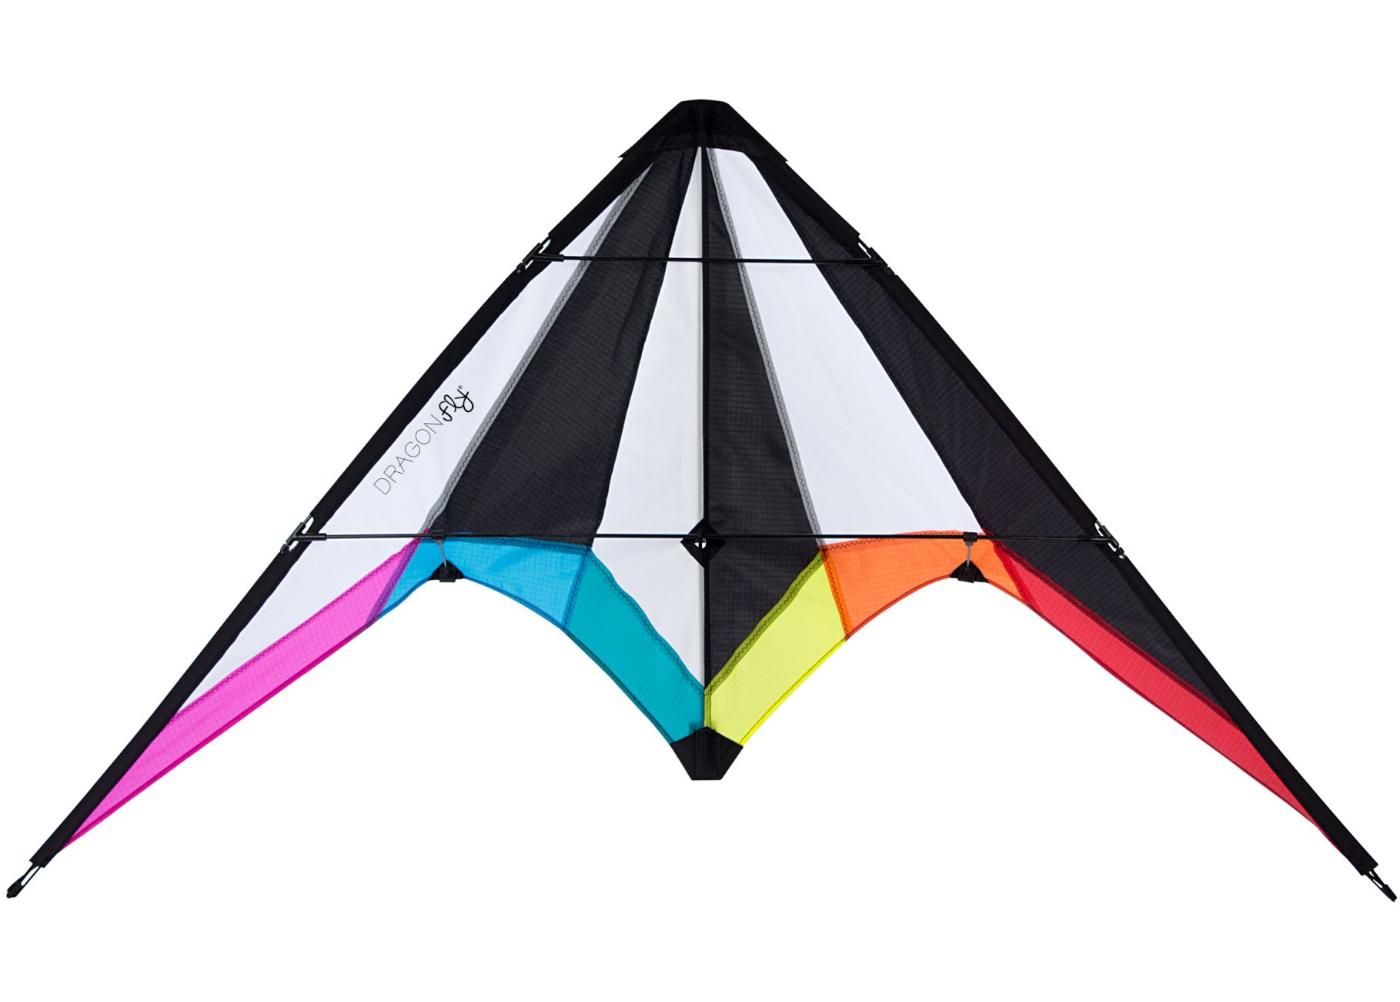 Tuulelohe trikitamiseks Stunt Kite Bise 115 Dragon Fly suurendatud